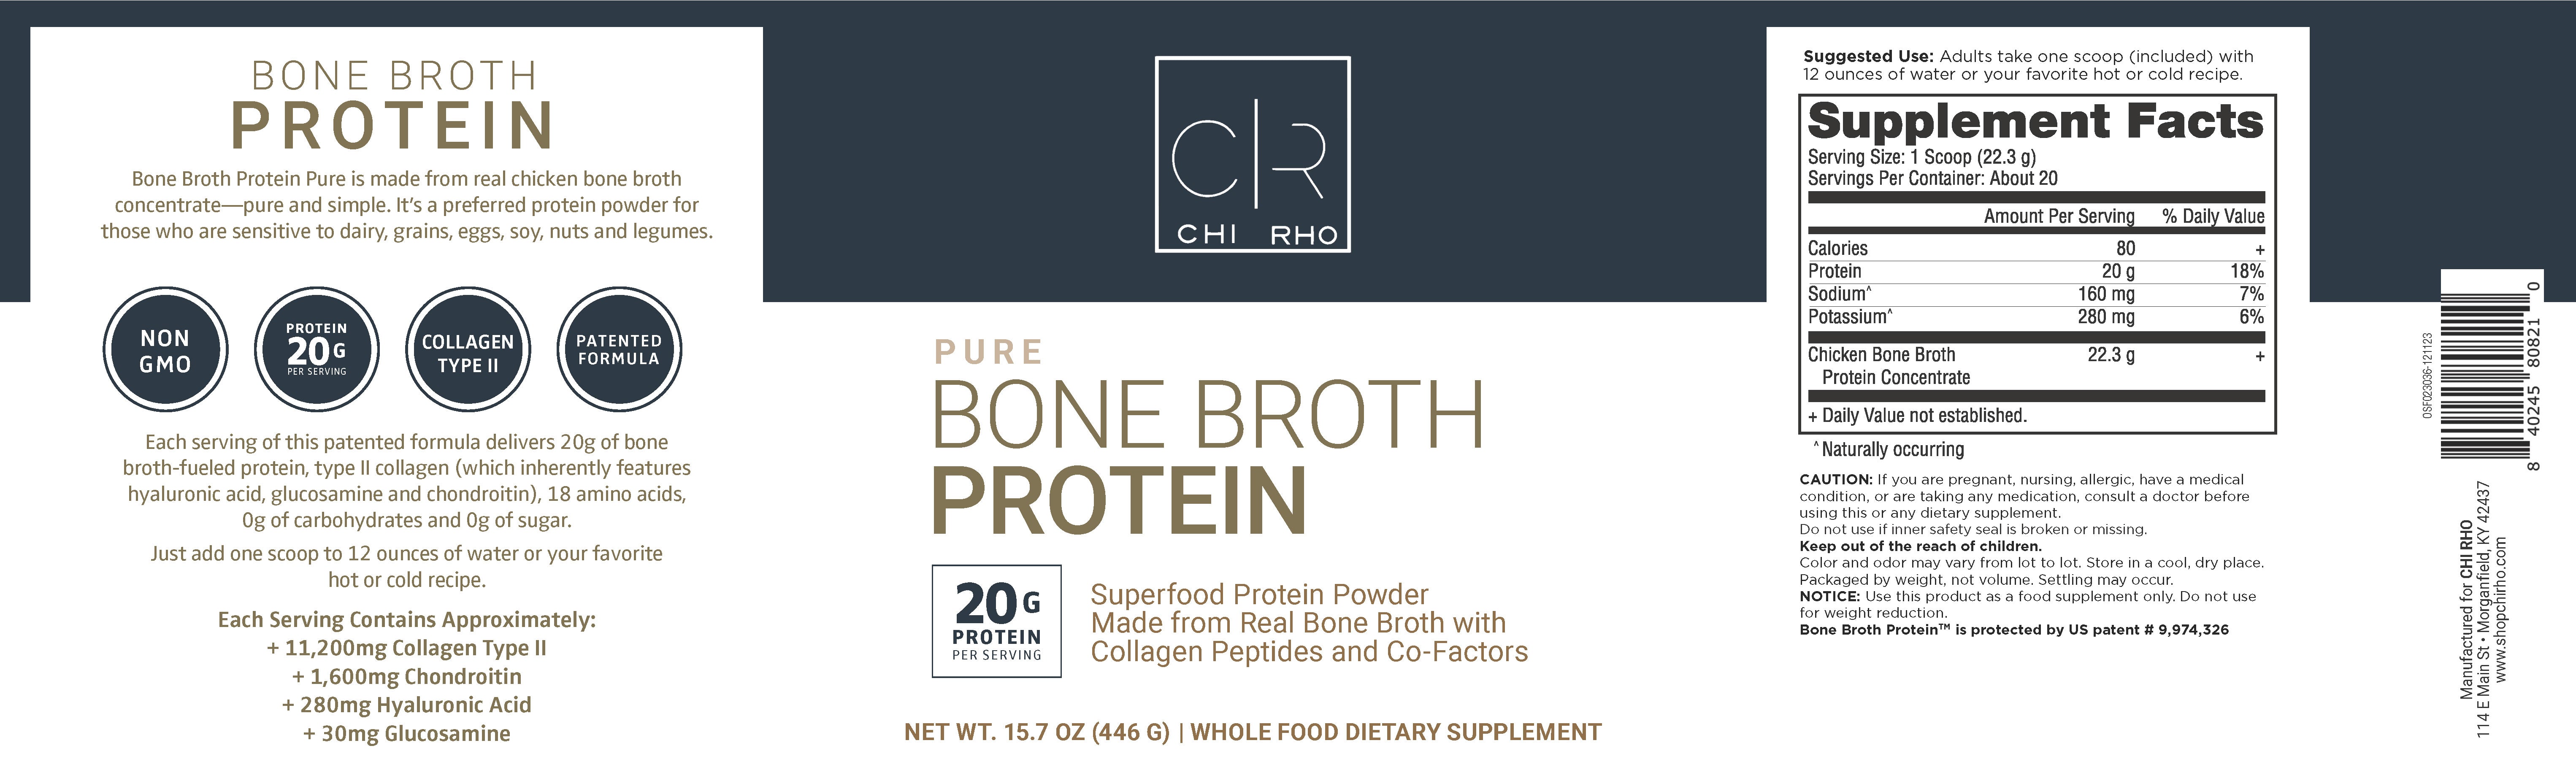 Bone Broth Protein Pure